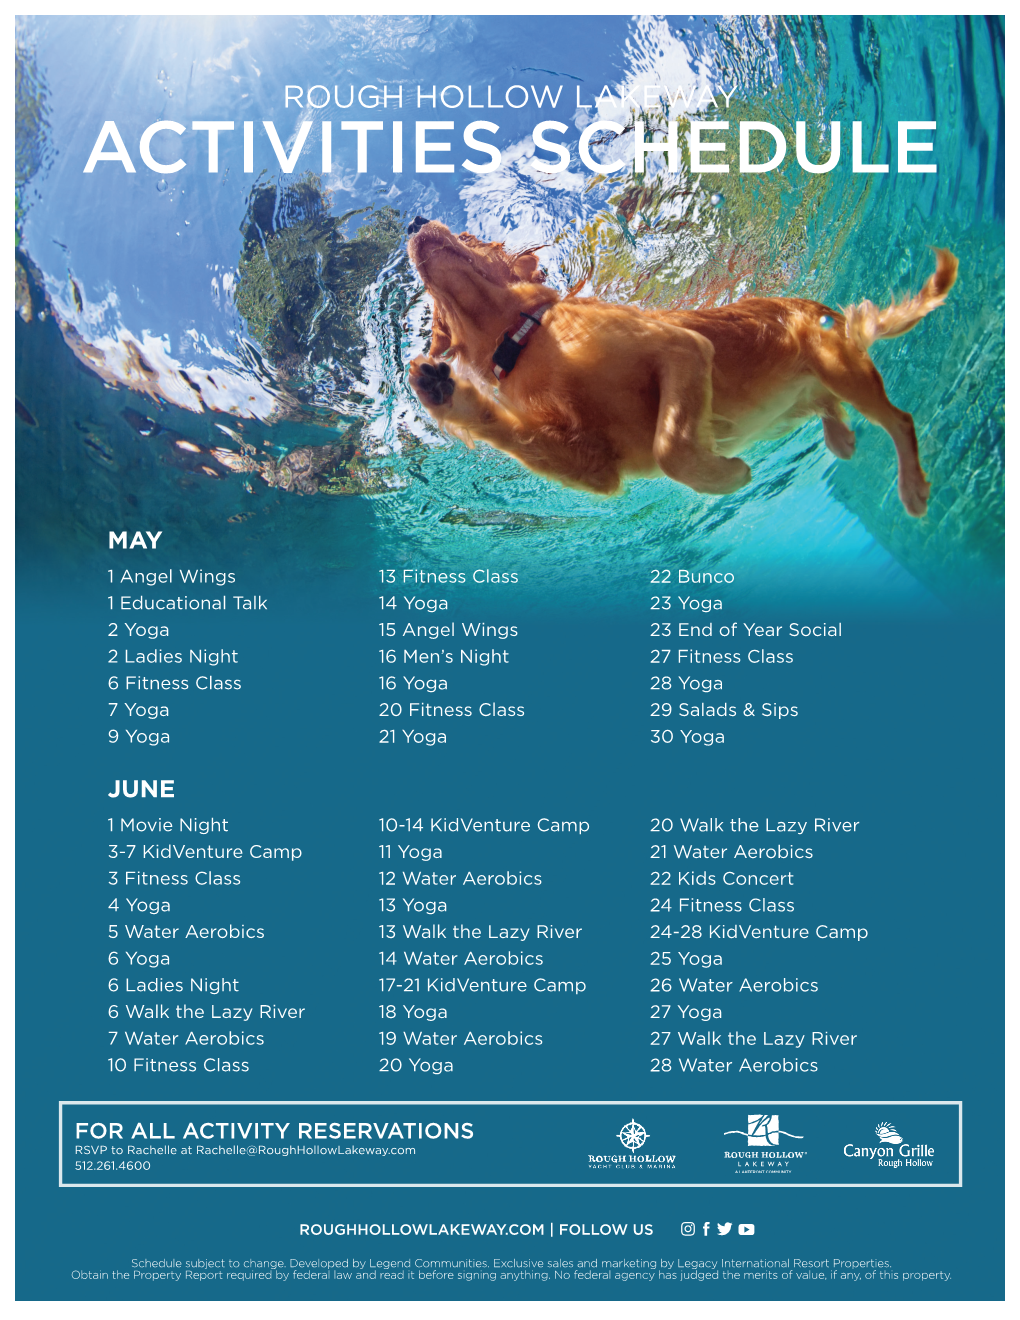 Activities Schedule